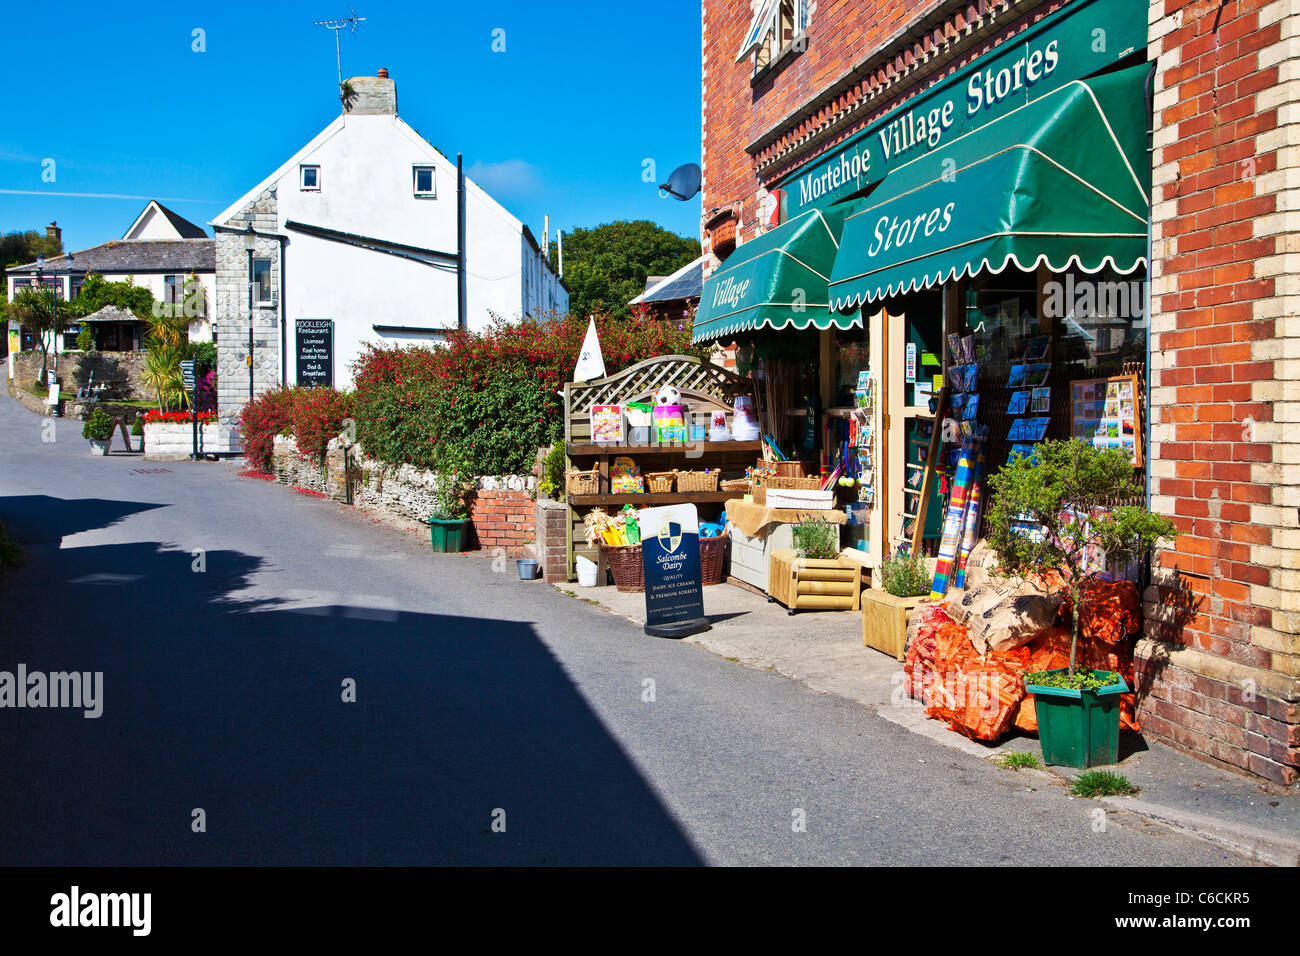 La rue principale qui traverse le joli village de Morthoe près de Herne Bay dans le nord du Devon, England, UK Banque D'Images